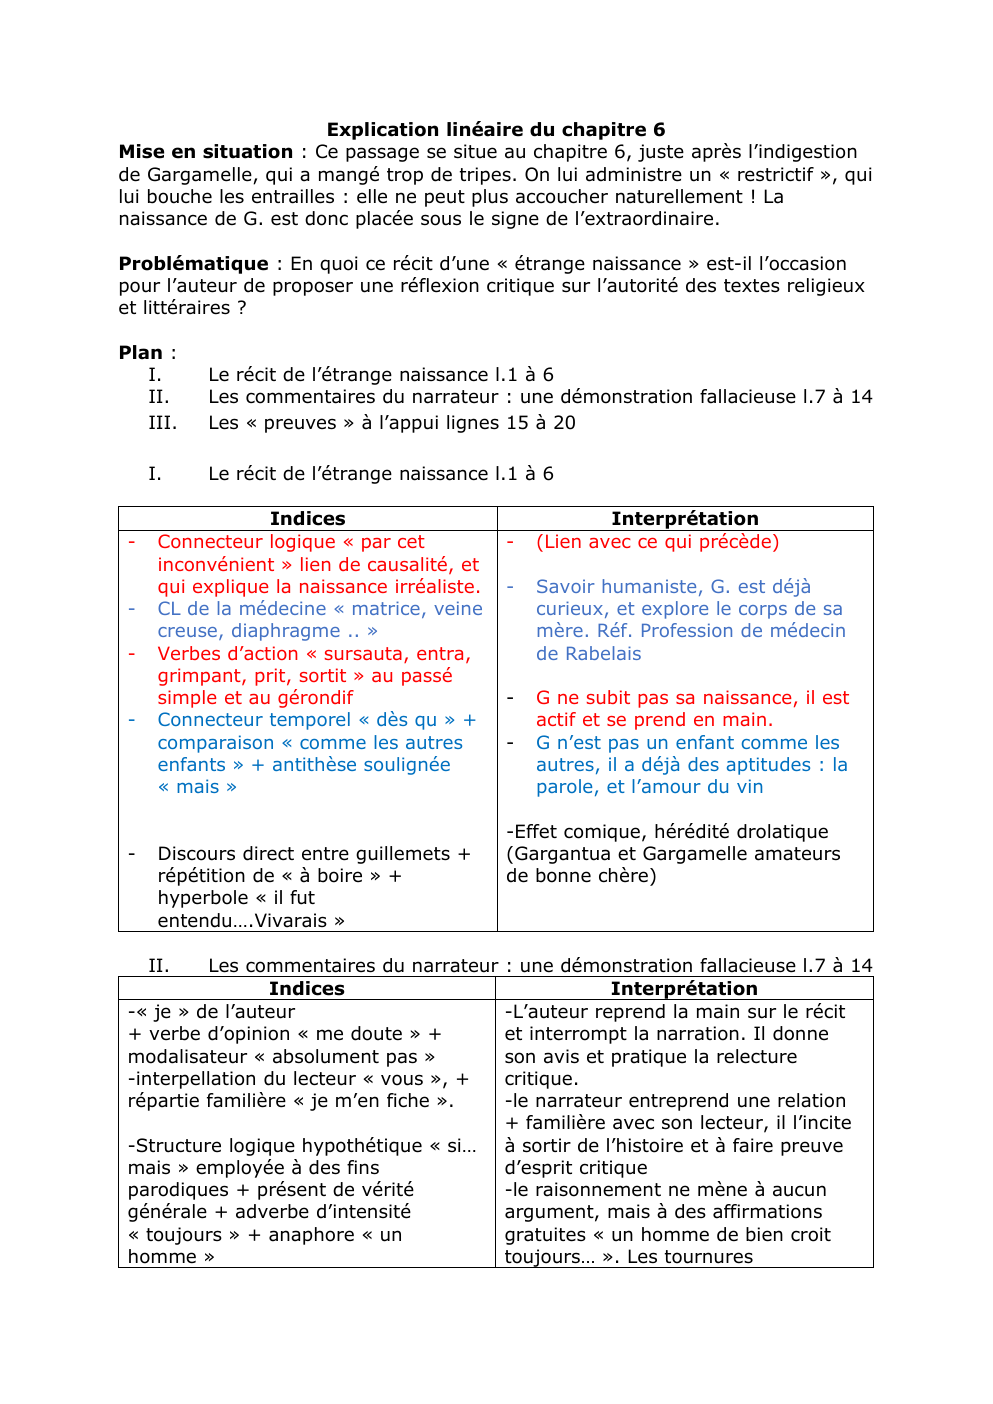 Prévisualisation du document Explication linéaire gargantua chapitre 6